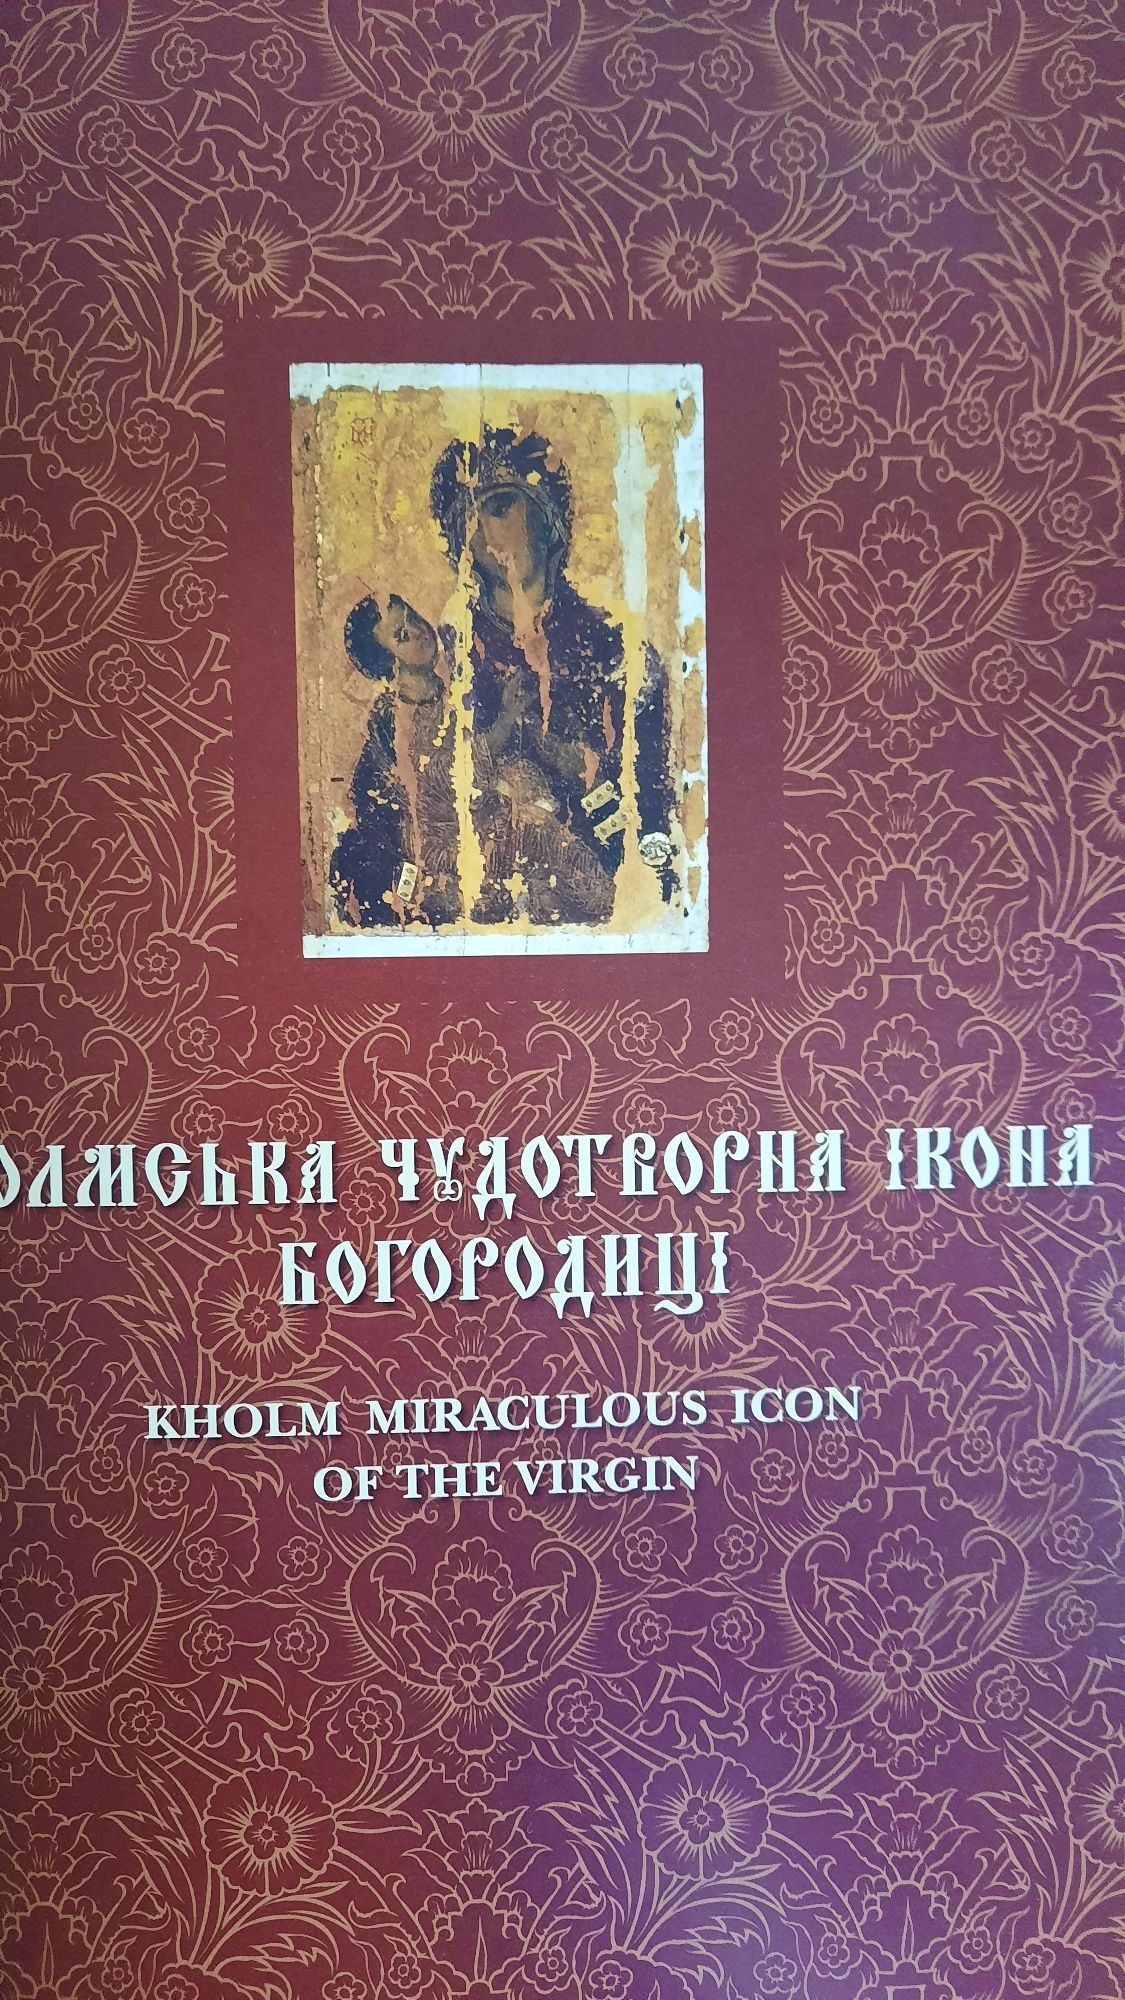 "Музей волинської ікони: книга-альбом", В. Александрович, 2012 рік